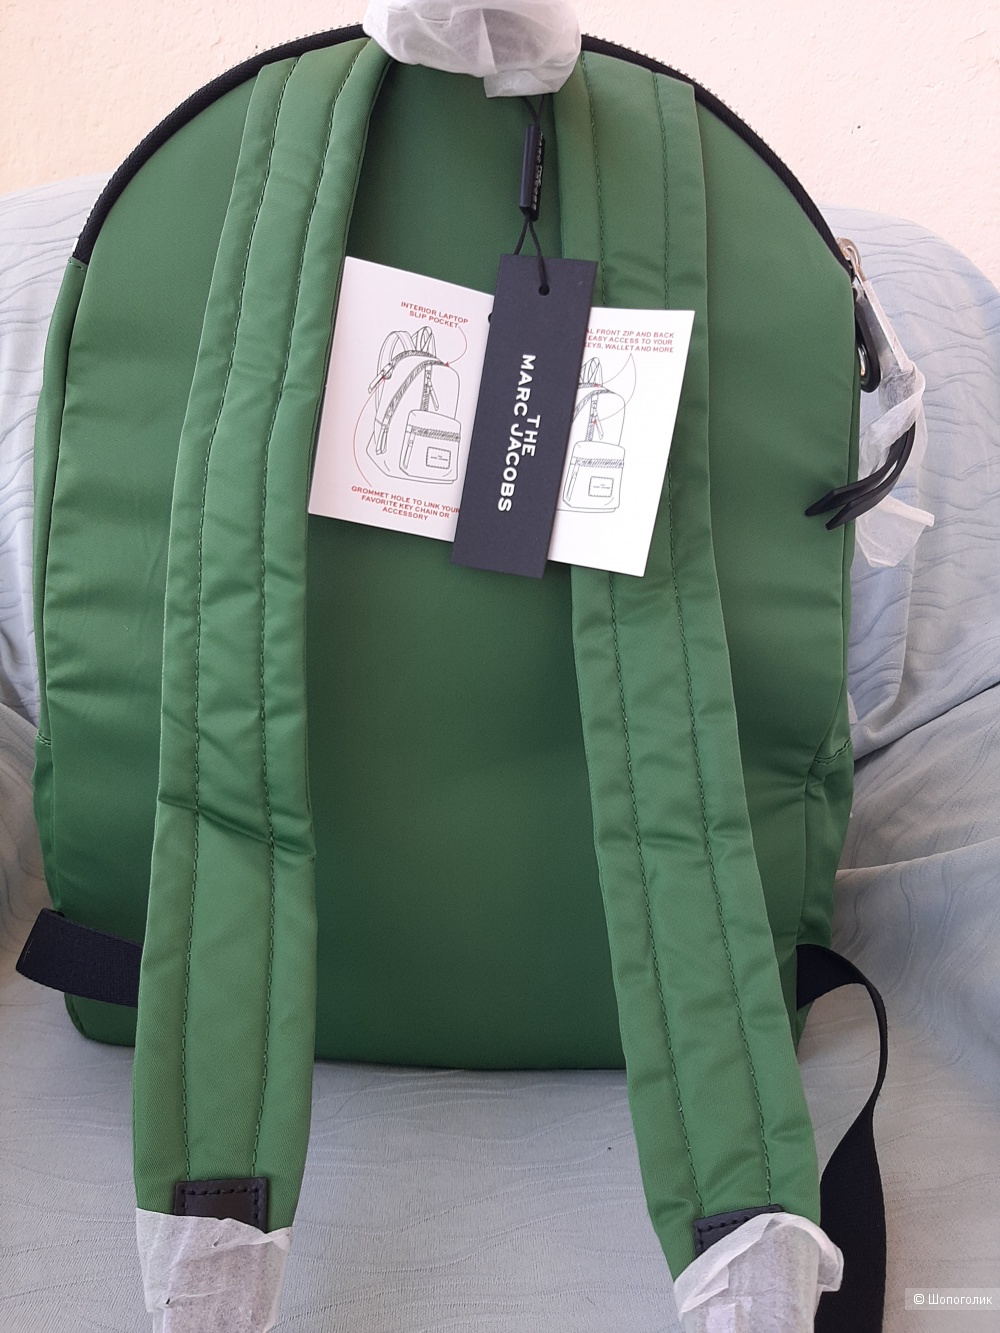 Рюкзак Marc Jacobs THE ZIPPER BACKPACK зеленый